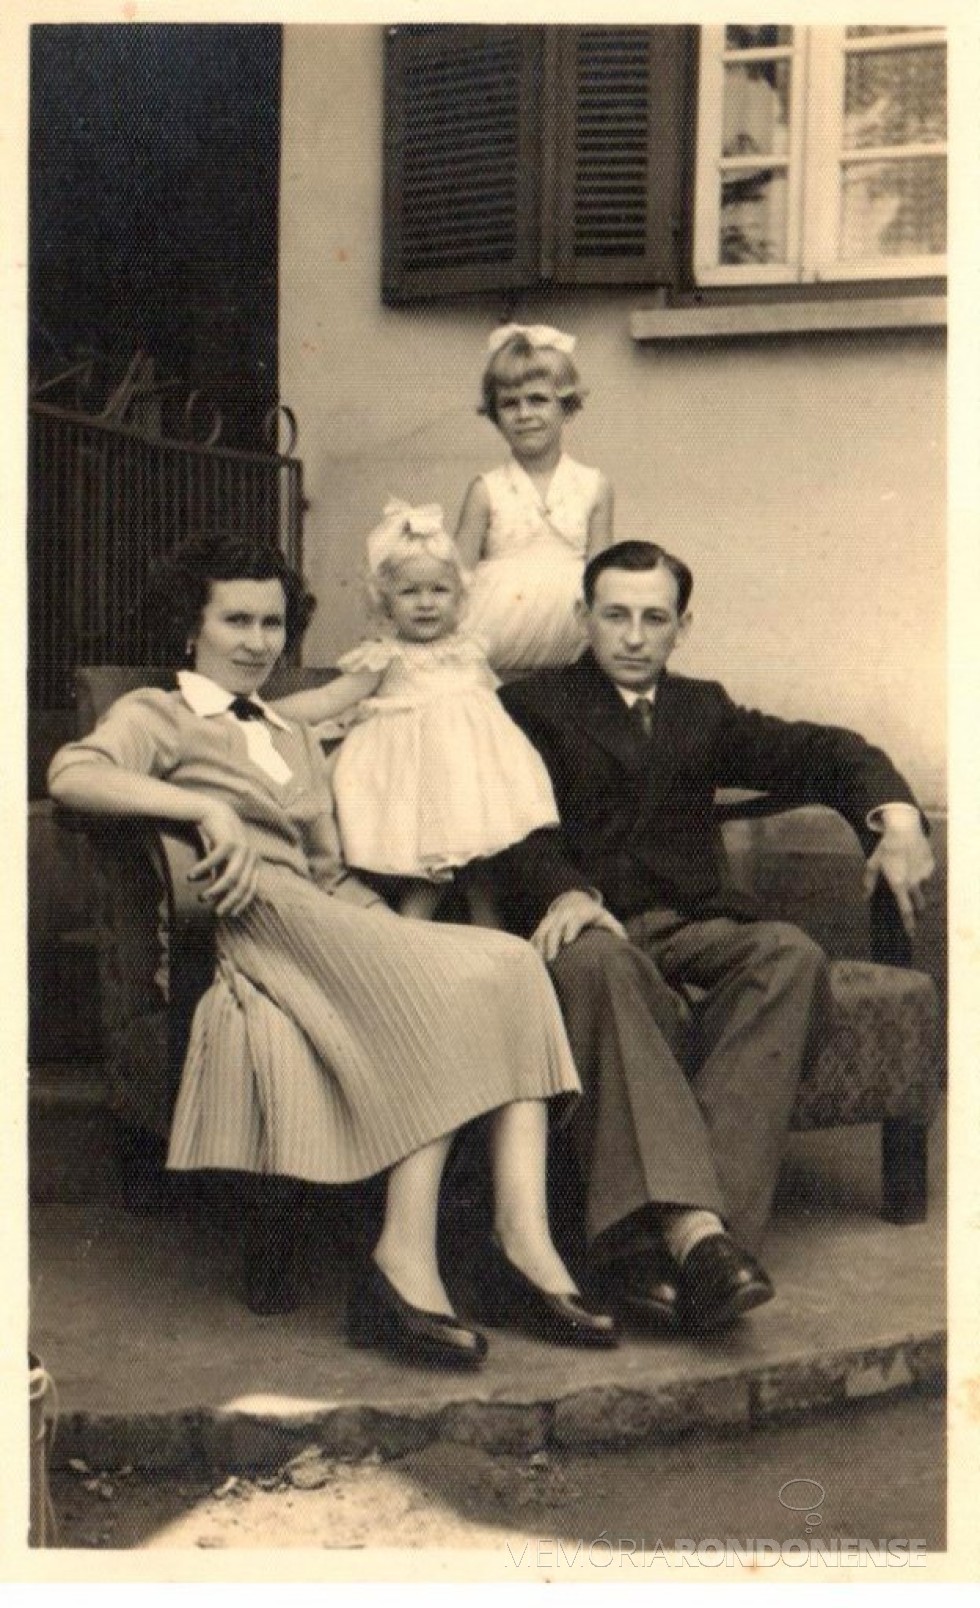 Casal Arlindo Alberto e Norma (Pöttker) Lamb, com as filhas Mirna e Ledi, que chegou a então Vila de General Rondon, em 26 de maio de 1955. Imagem: Acervo da Família - FOTO 2 - 